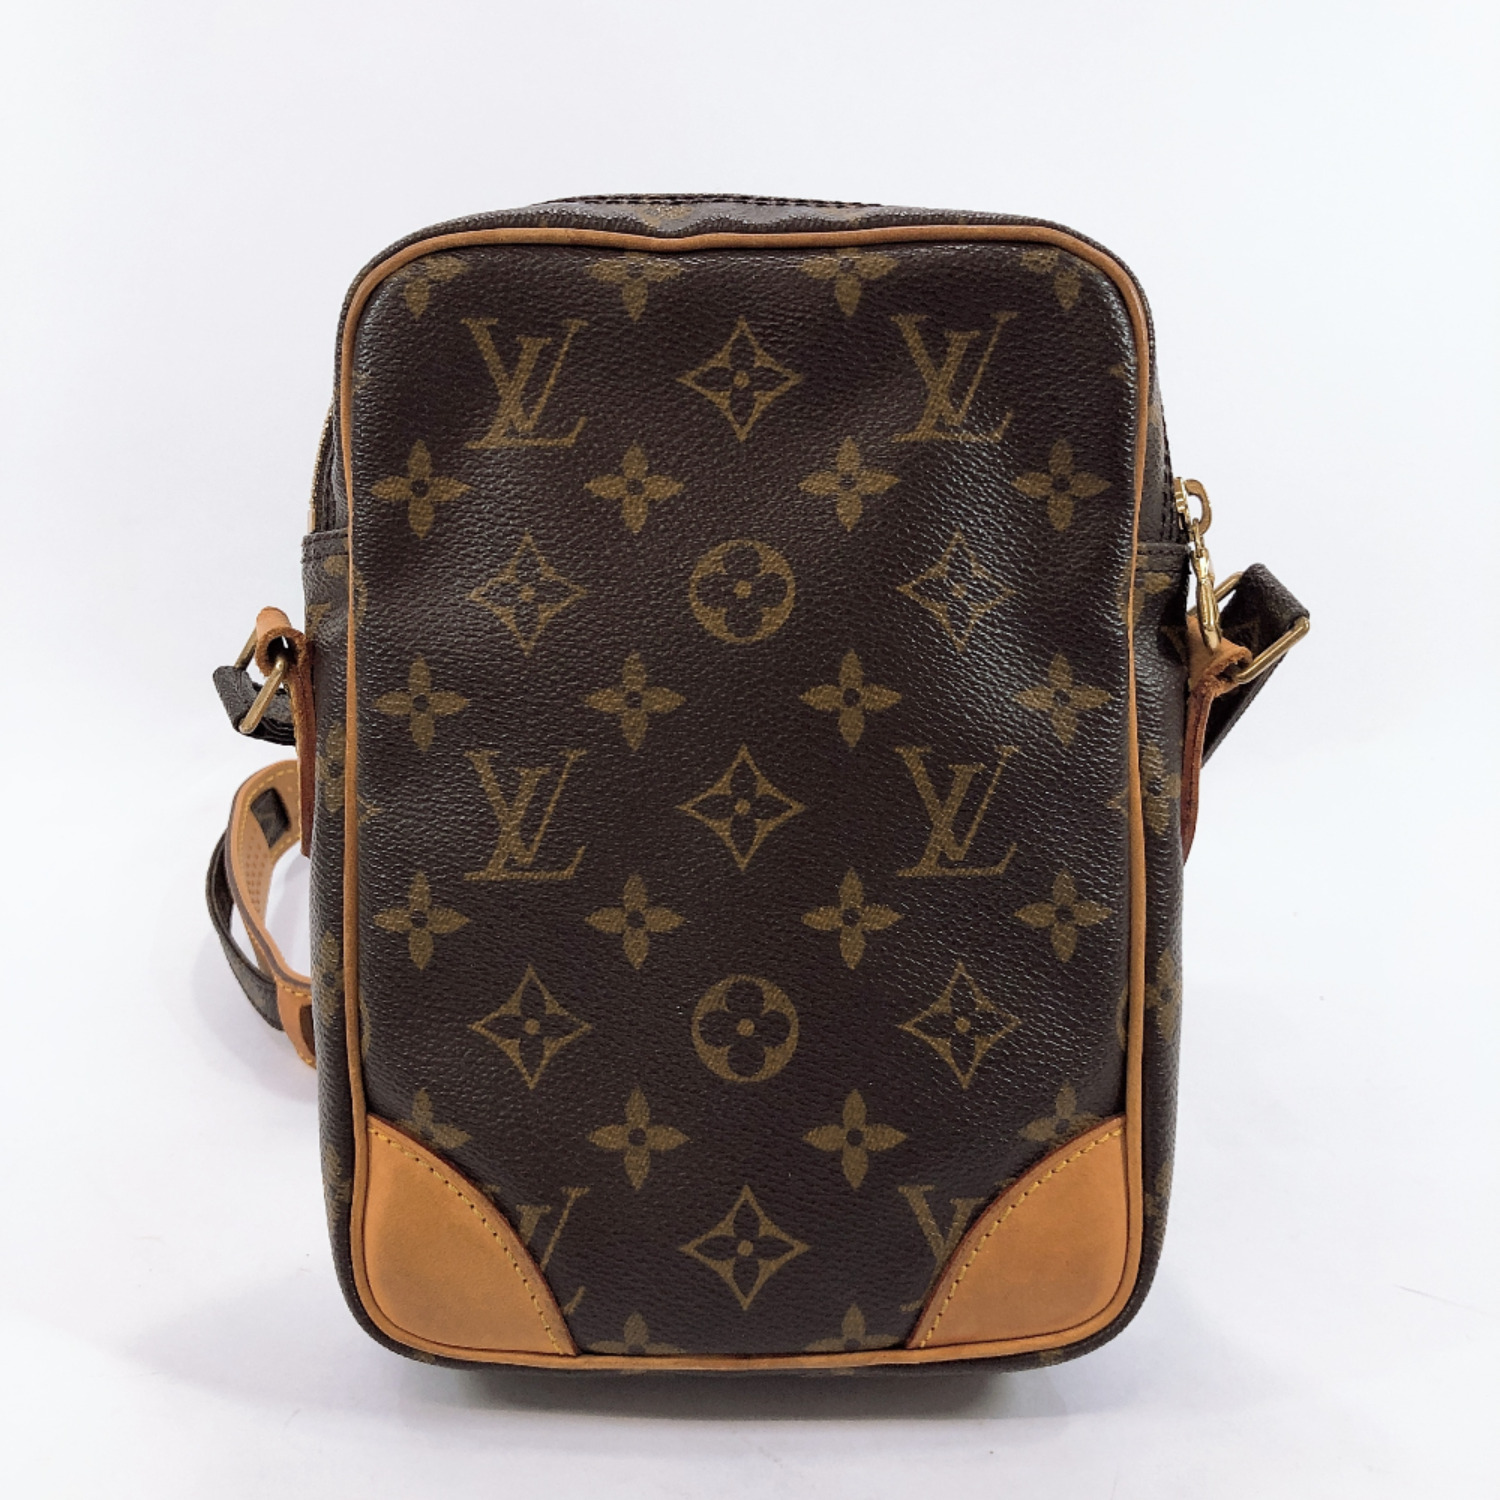 LOUIS VUITTON M45236 Amazon Shoulder Bag Monogram canvas Women | eBay